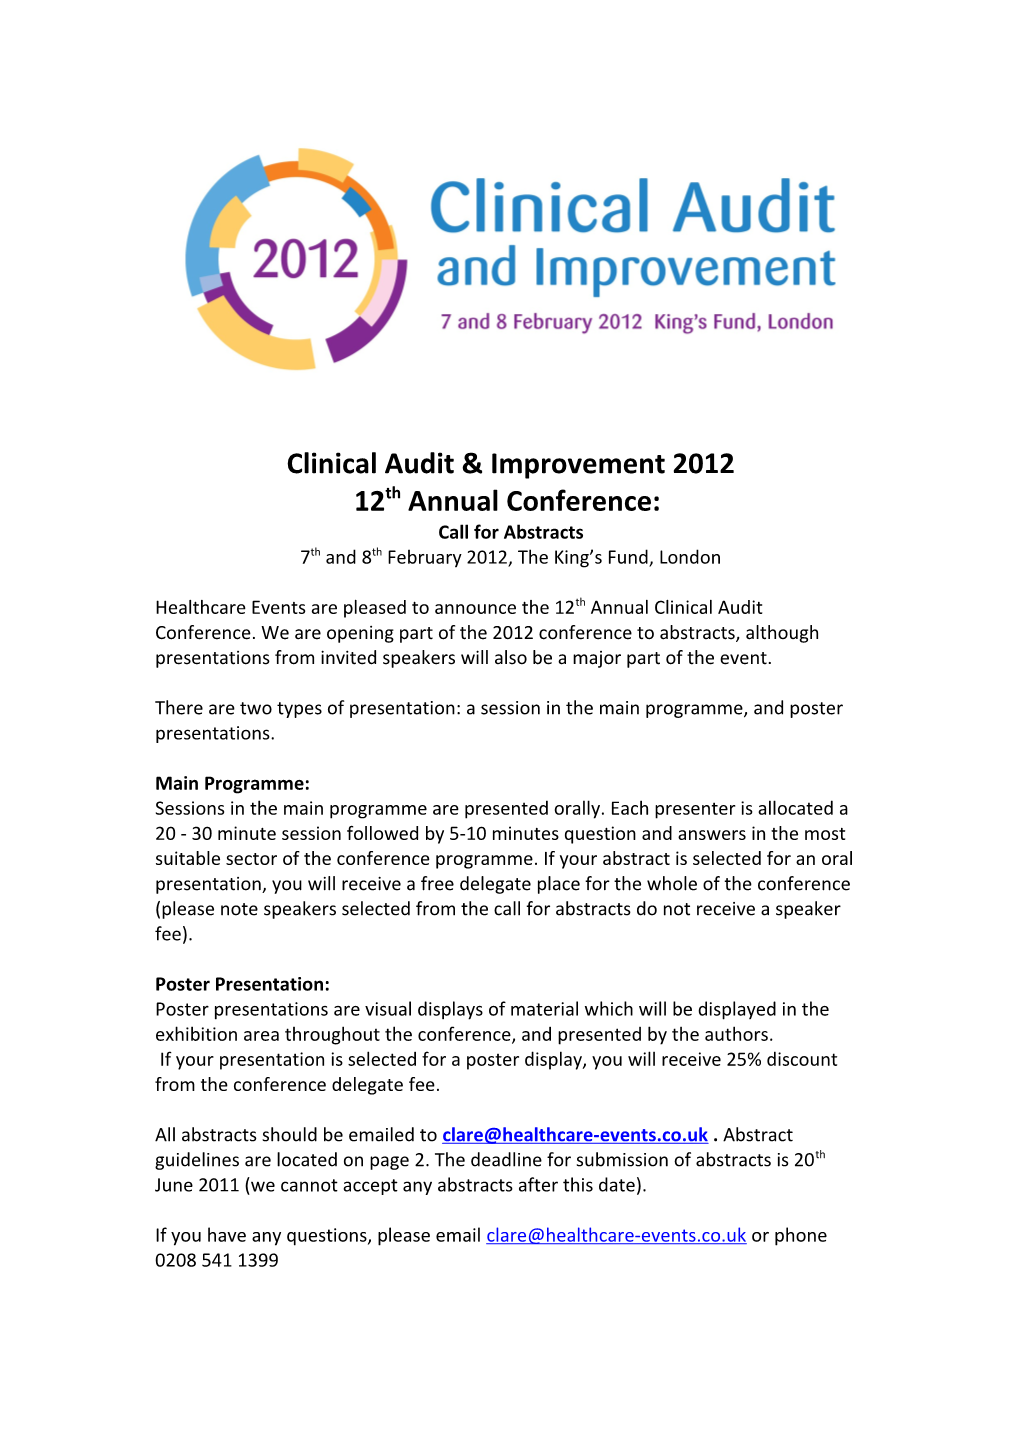 Clinical Audit & Improvement 2012